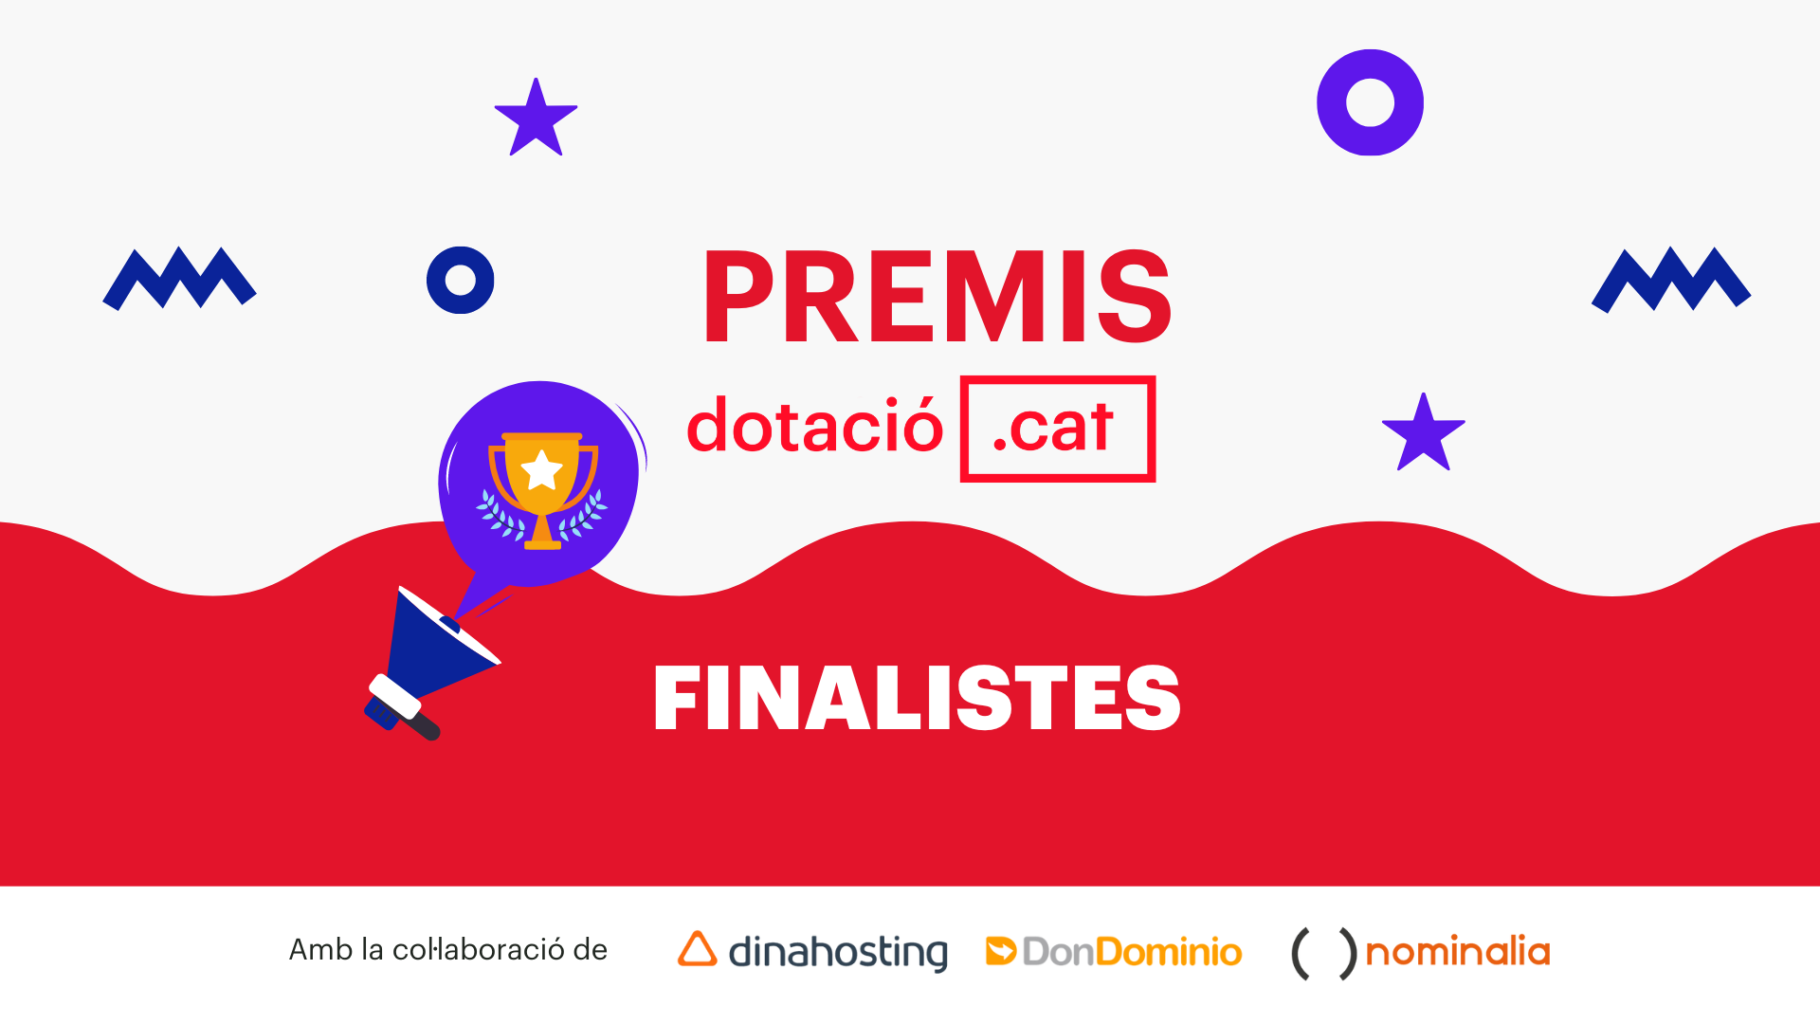 Finalistes Premis Dotació .cat